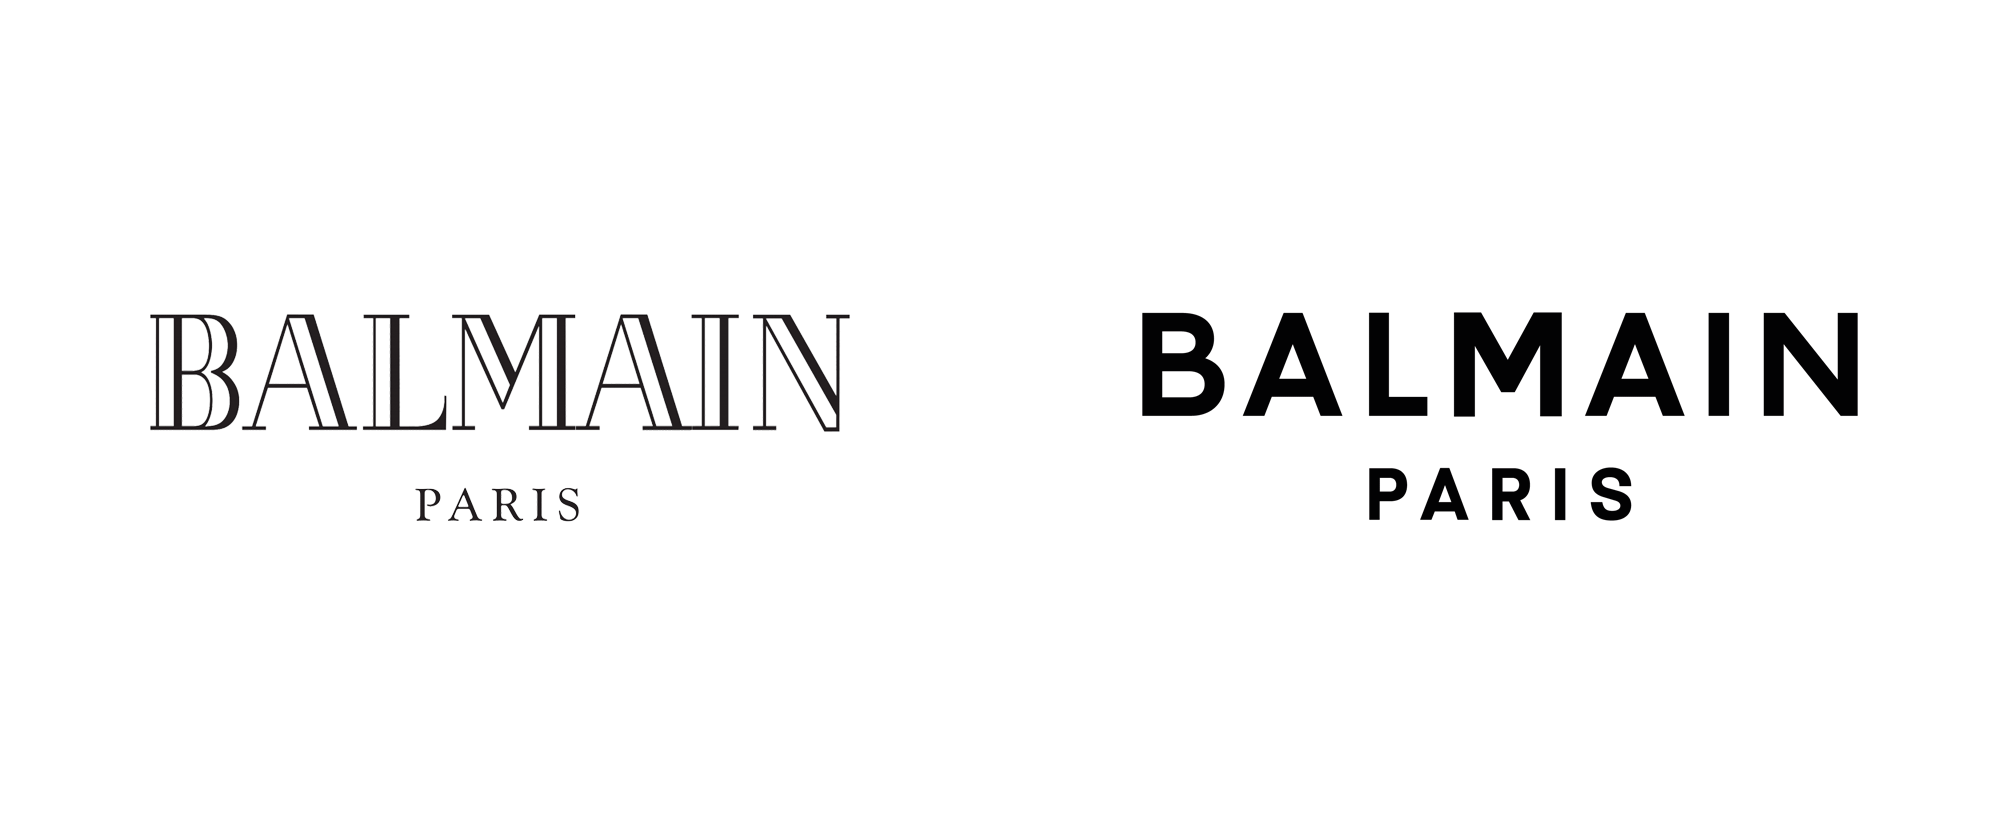 : What is a Balmain logo?